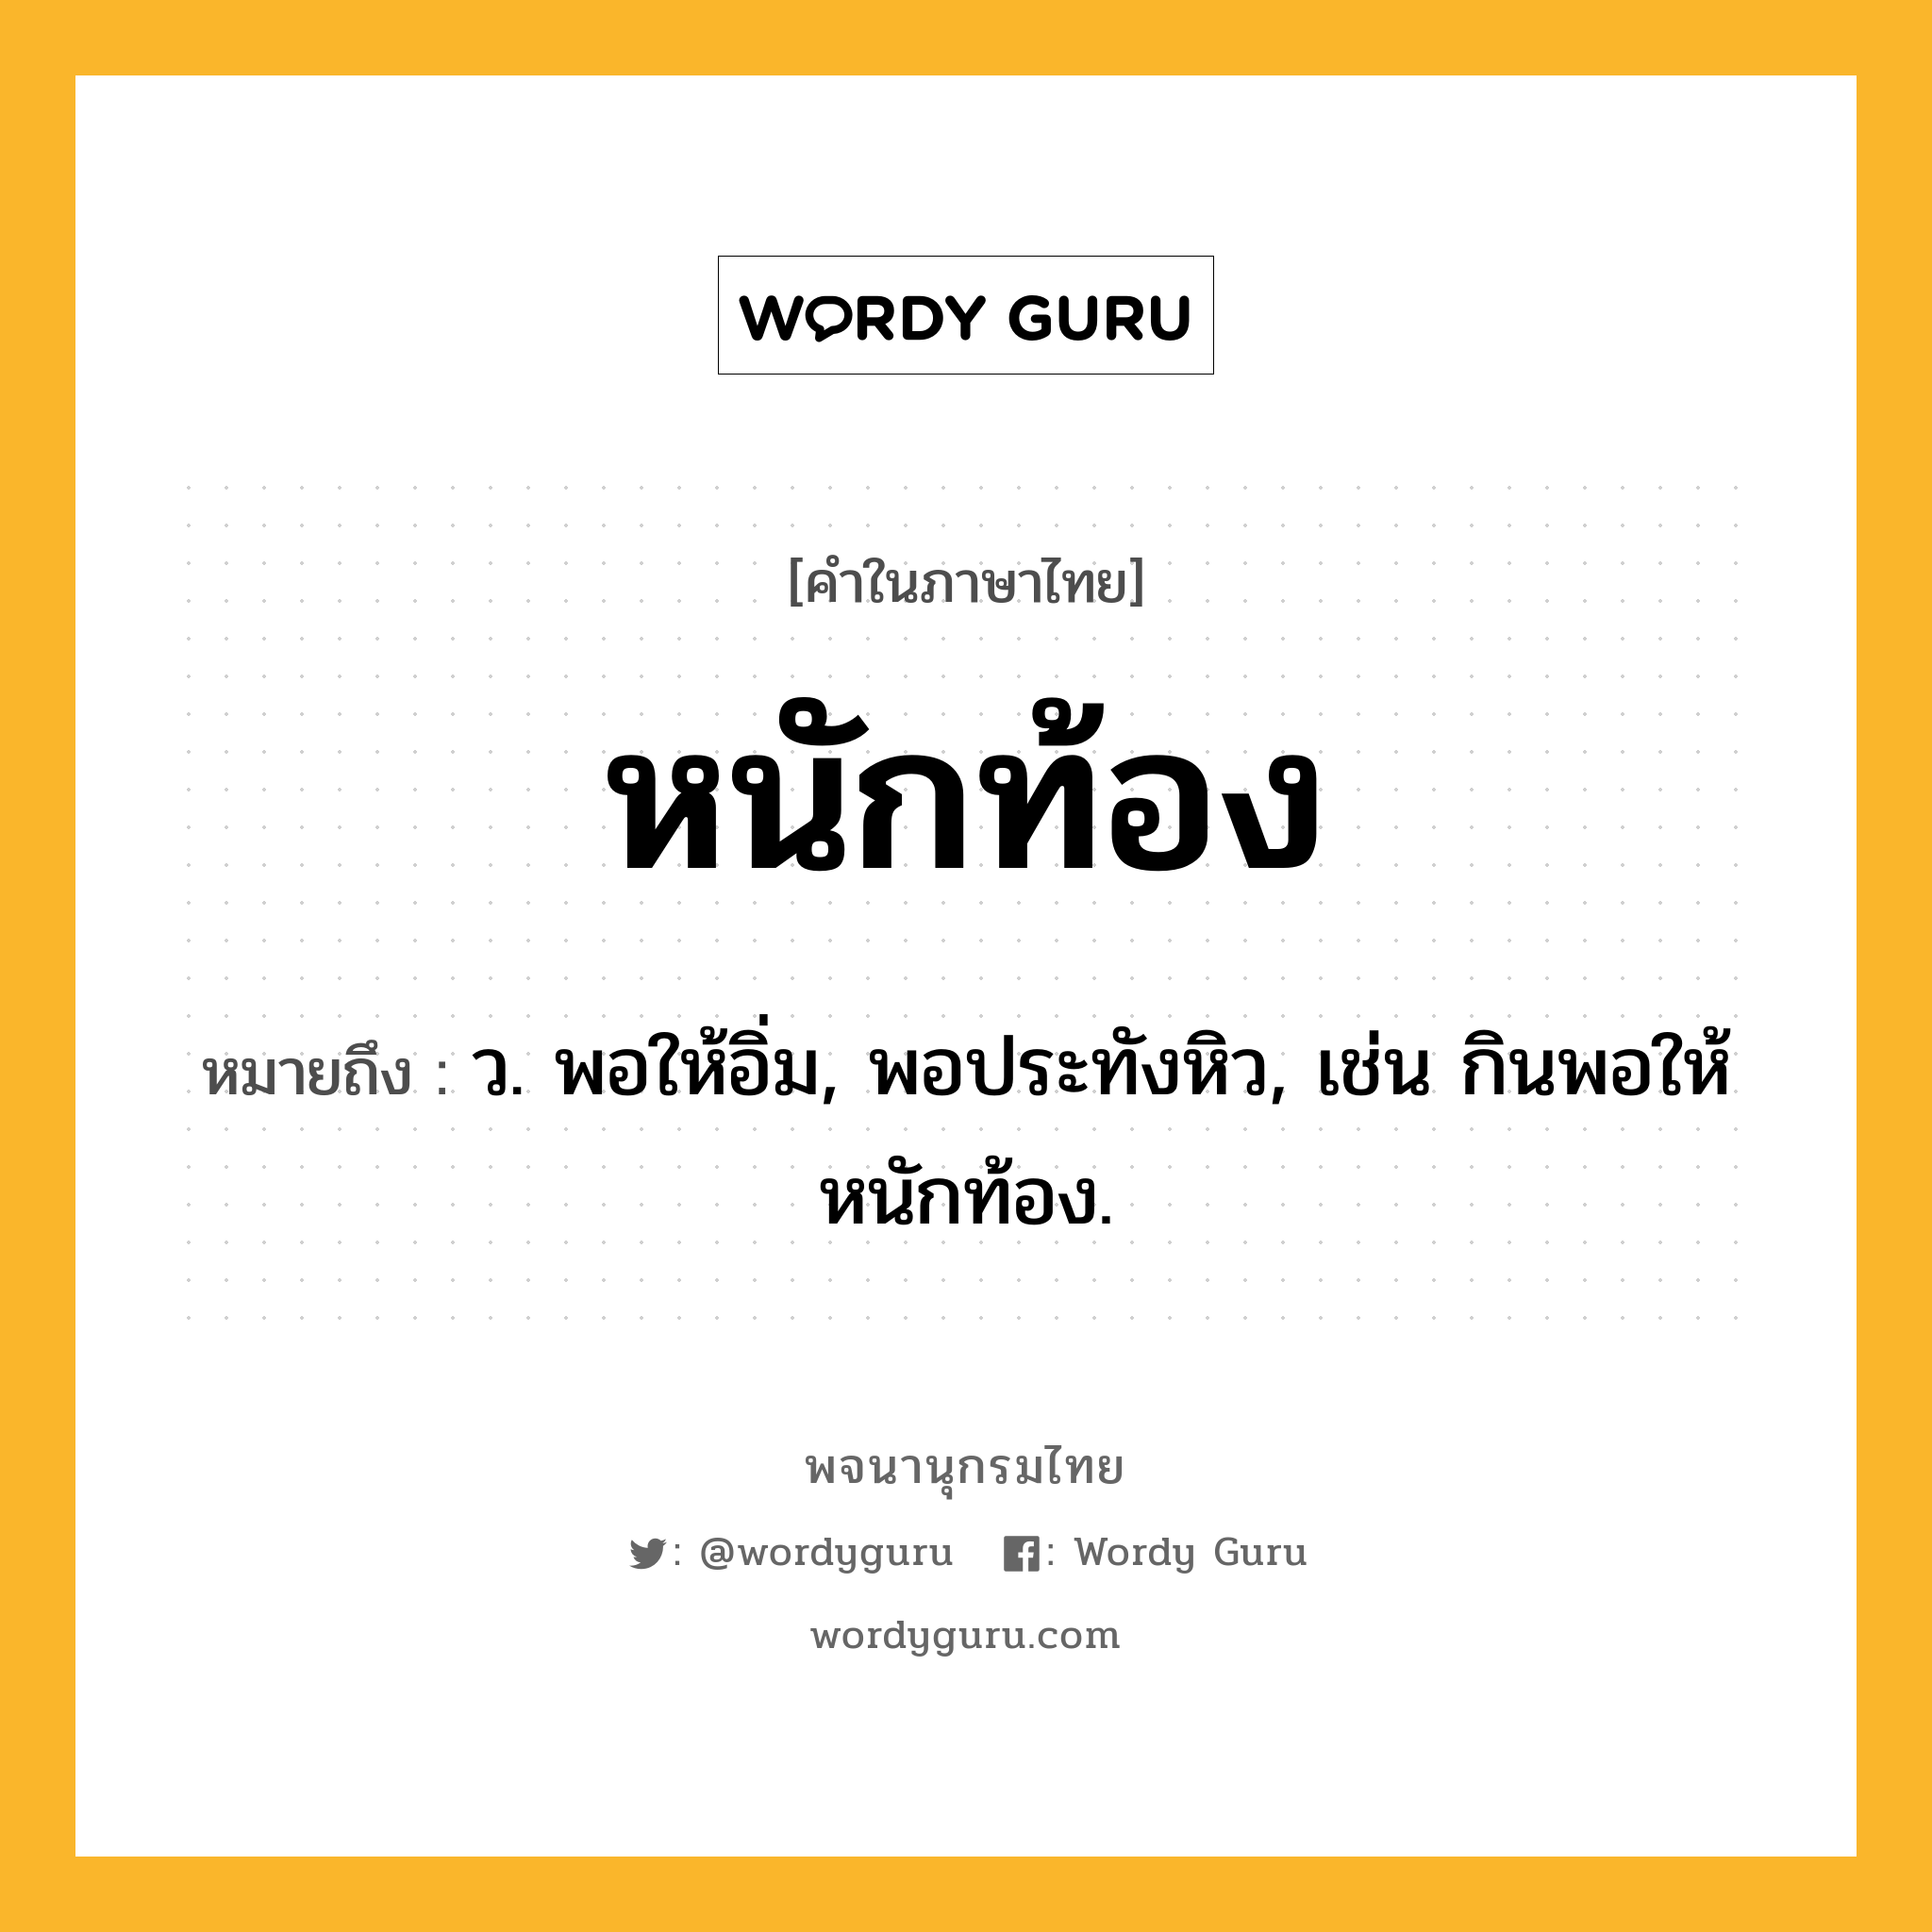 หนักท้อง ความหมาย หมายถึงอะไร?, คำในภาษาไทย หนักท้อง หมายถึง ว. พอให้อิ่ม, พอประทังหิว, เช่น กินพอให้หนักท้อง.